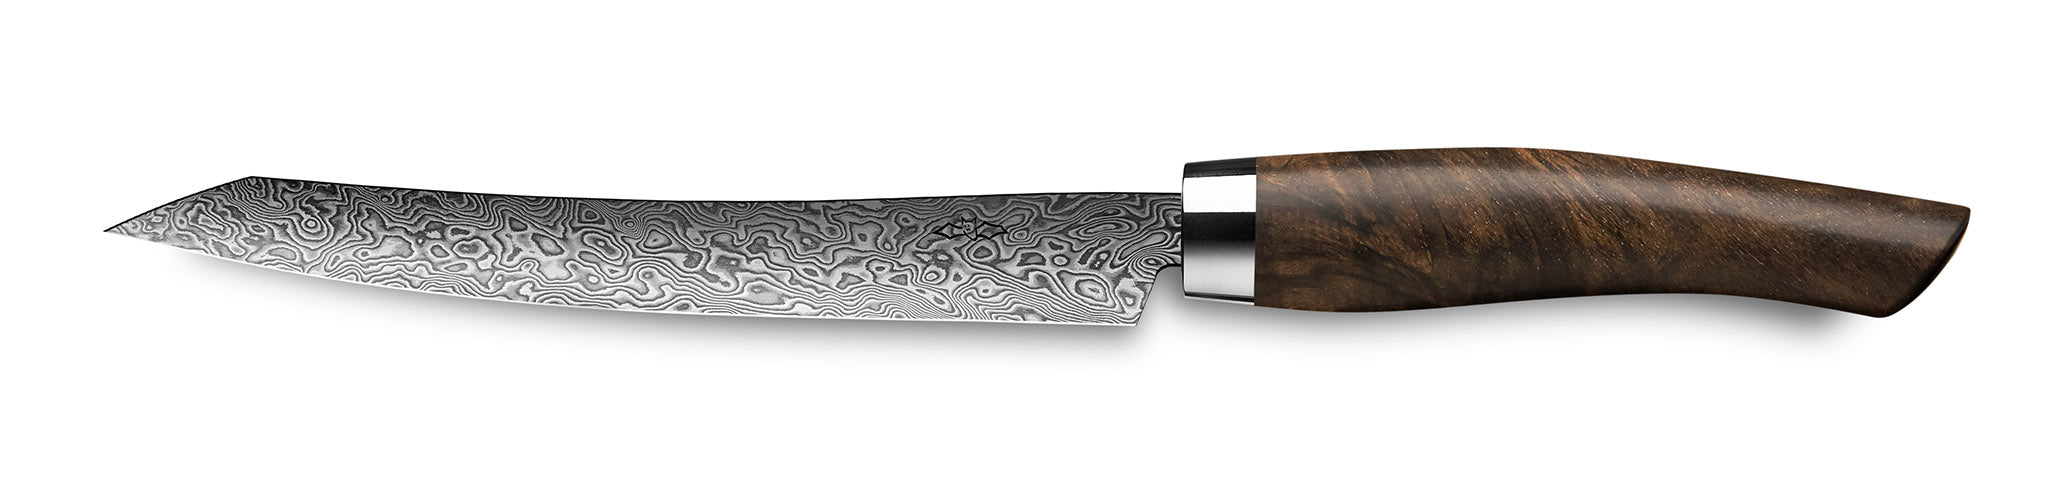 Nesmuk Tranchiermesser Slicer C90 mit Klinge aus Damaszener Stahl und Griff aus Walnuss